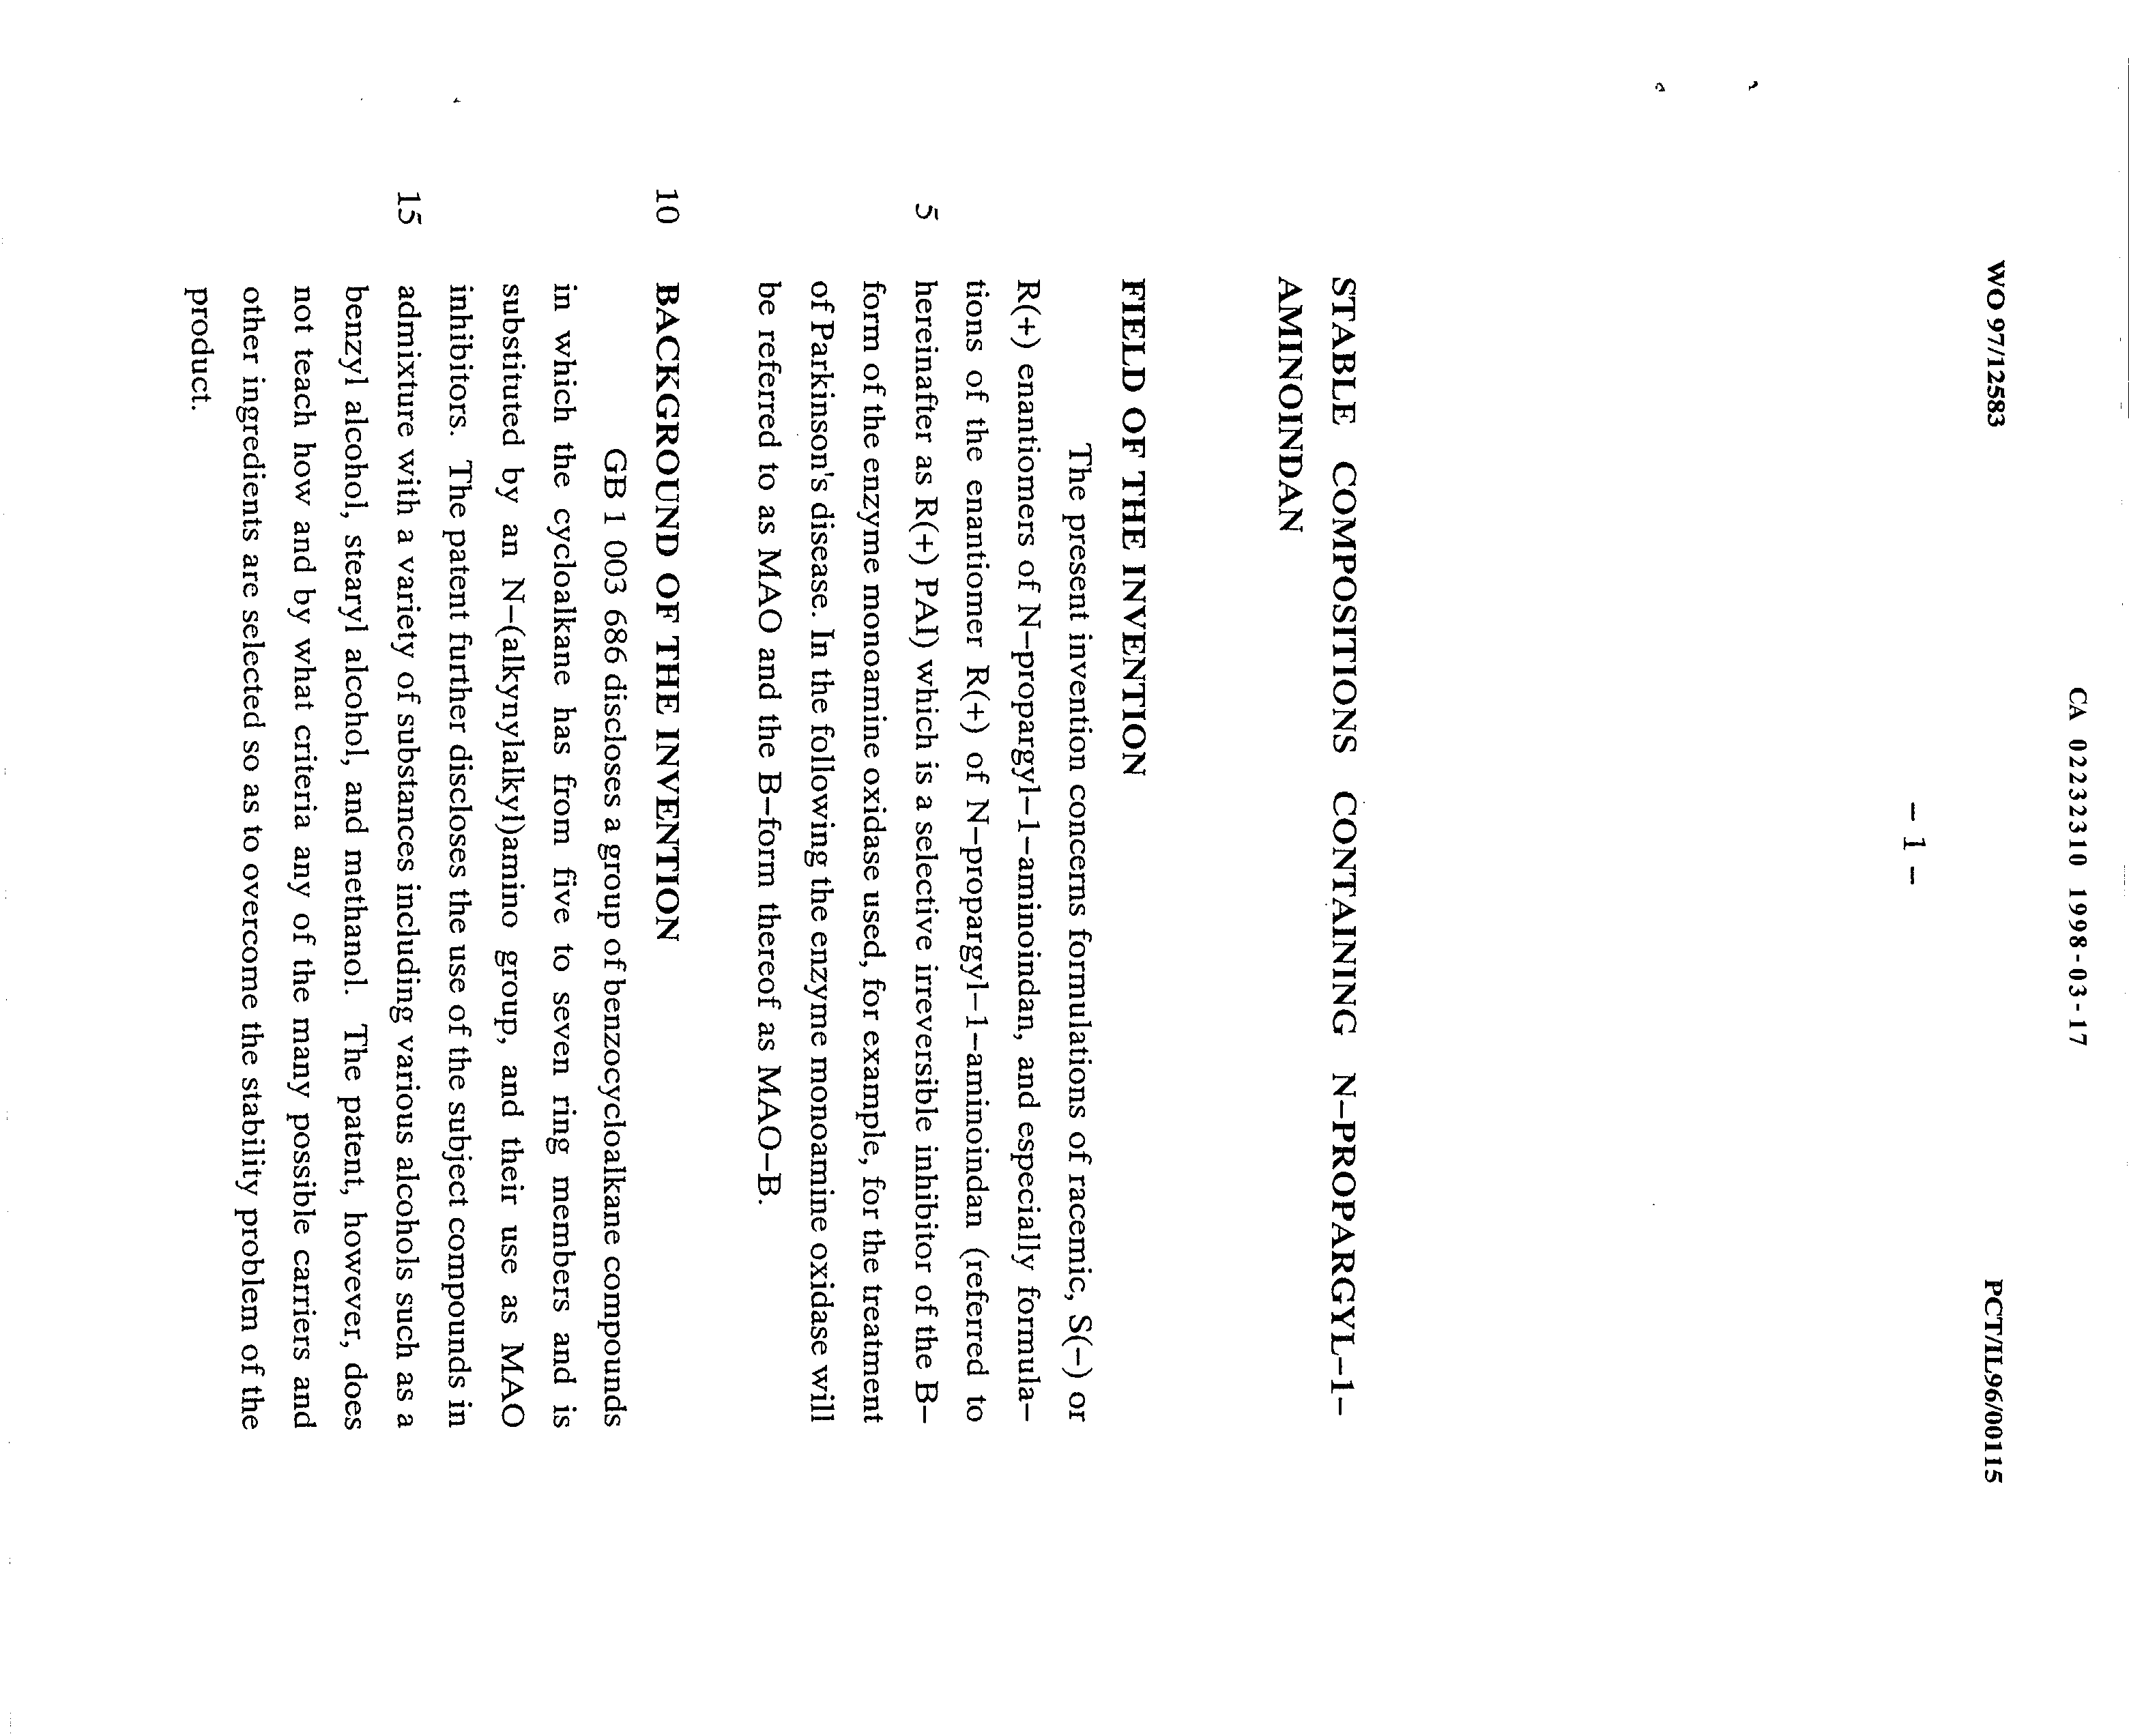 Canadian Patent Document 2232310. Description 19971217. Image 1 of 8